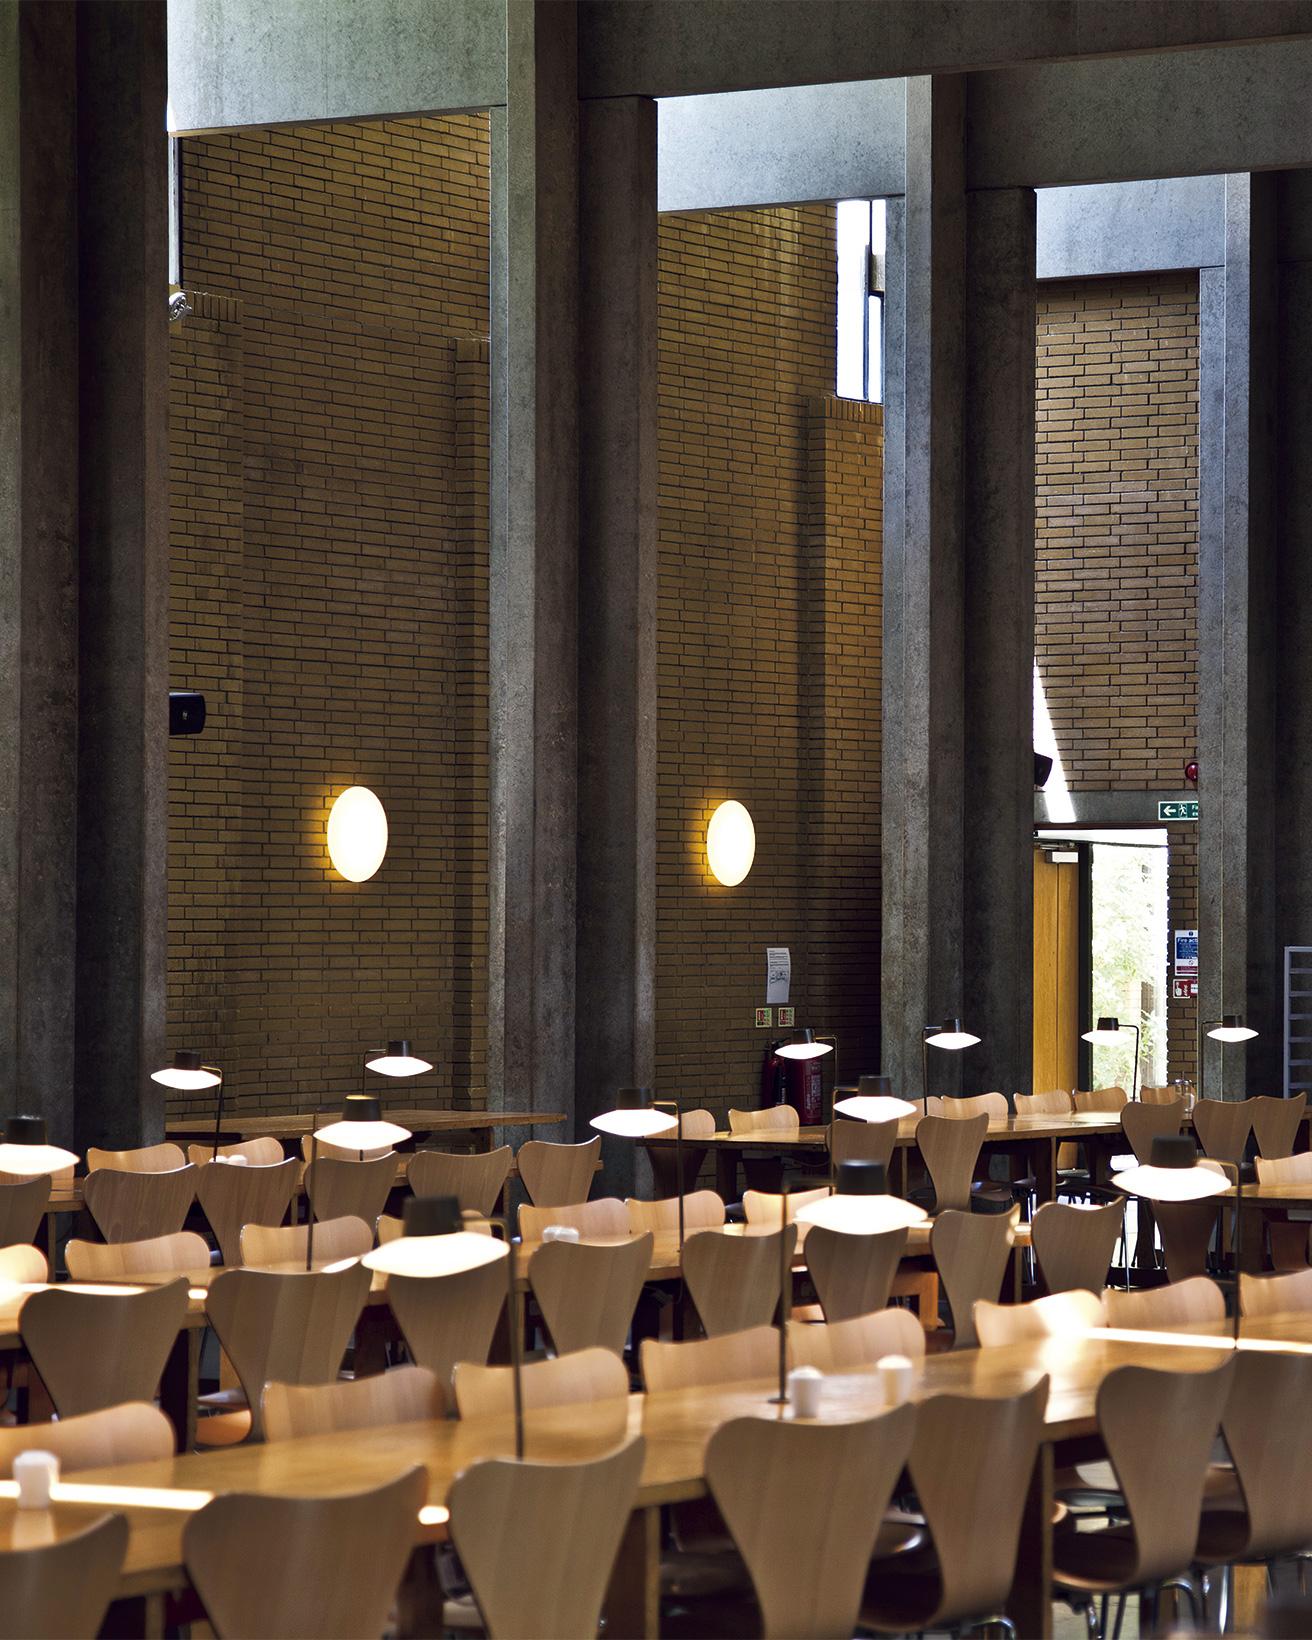 コンクリートの十字形の柱と梁が可能にした大空間。オックスフォード大学の中でも一番サイズの大きい350人収容のダイニングホールである。サイドとトップから取り込む自然光を補うのが梁と同じくグリッド状に並ぶ照明だ。レンガの壁にはロードヴル市庁舎用にデザインされた《AJ エクリプタ》が並ぶ。